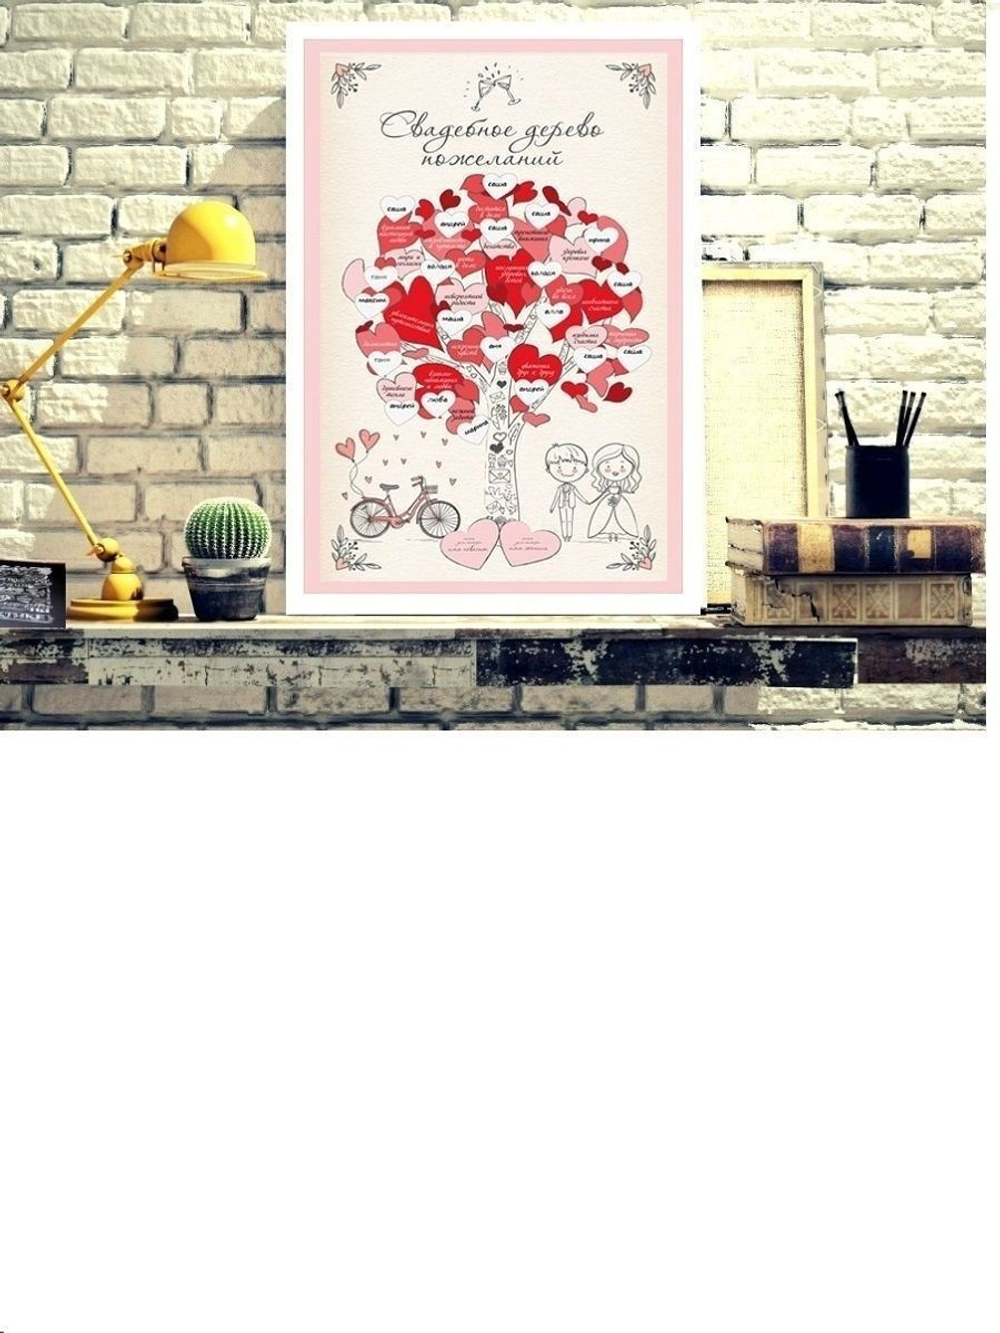 Плакат "Свадебное дерево пожеланий" в подарочной тубе